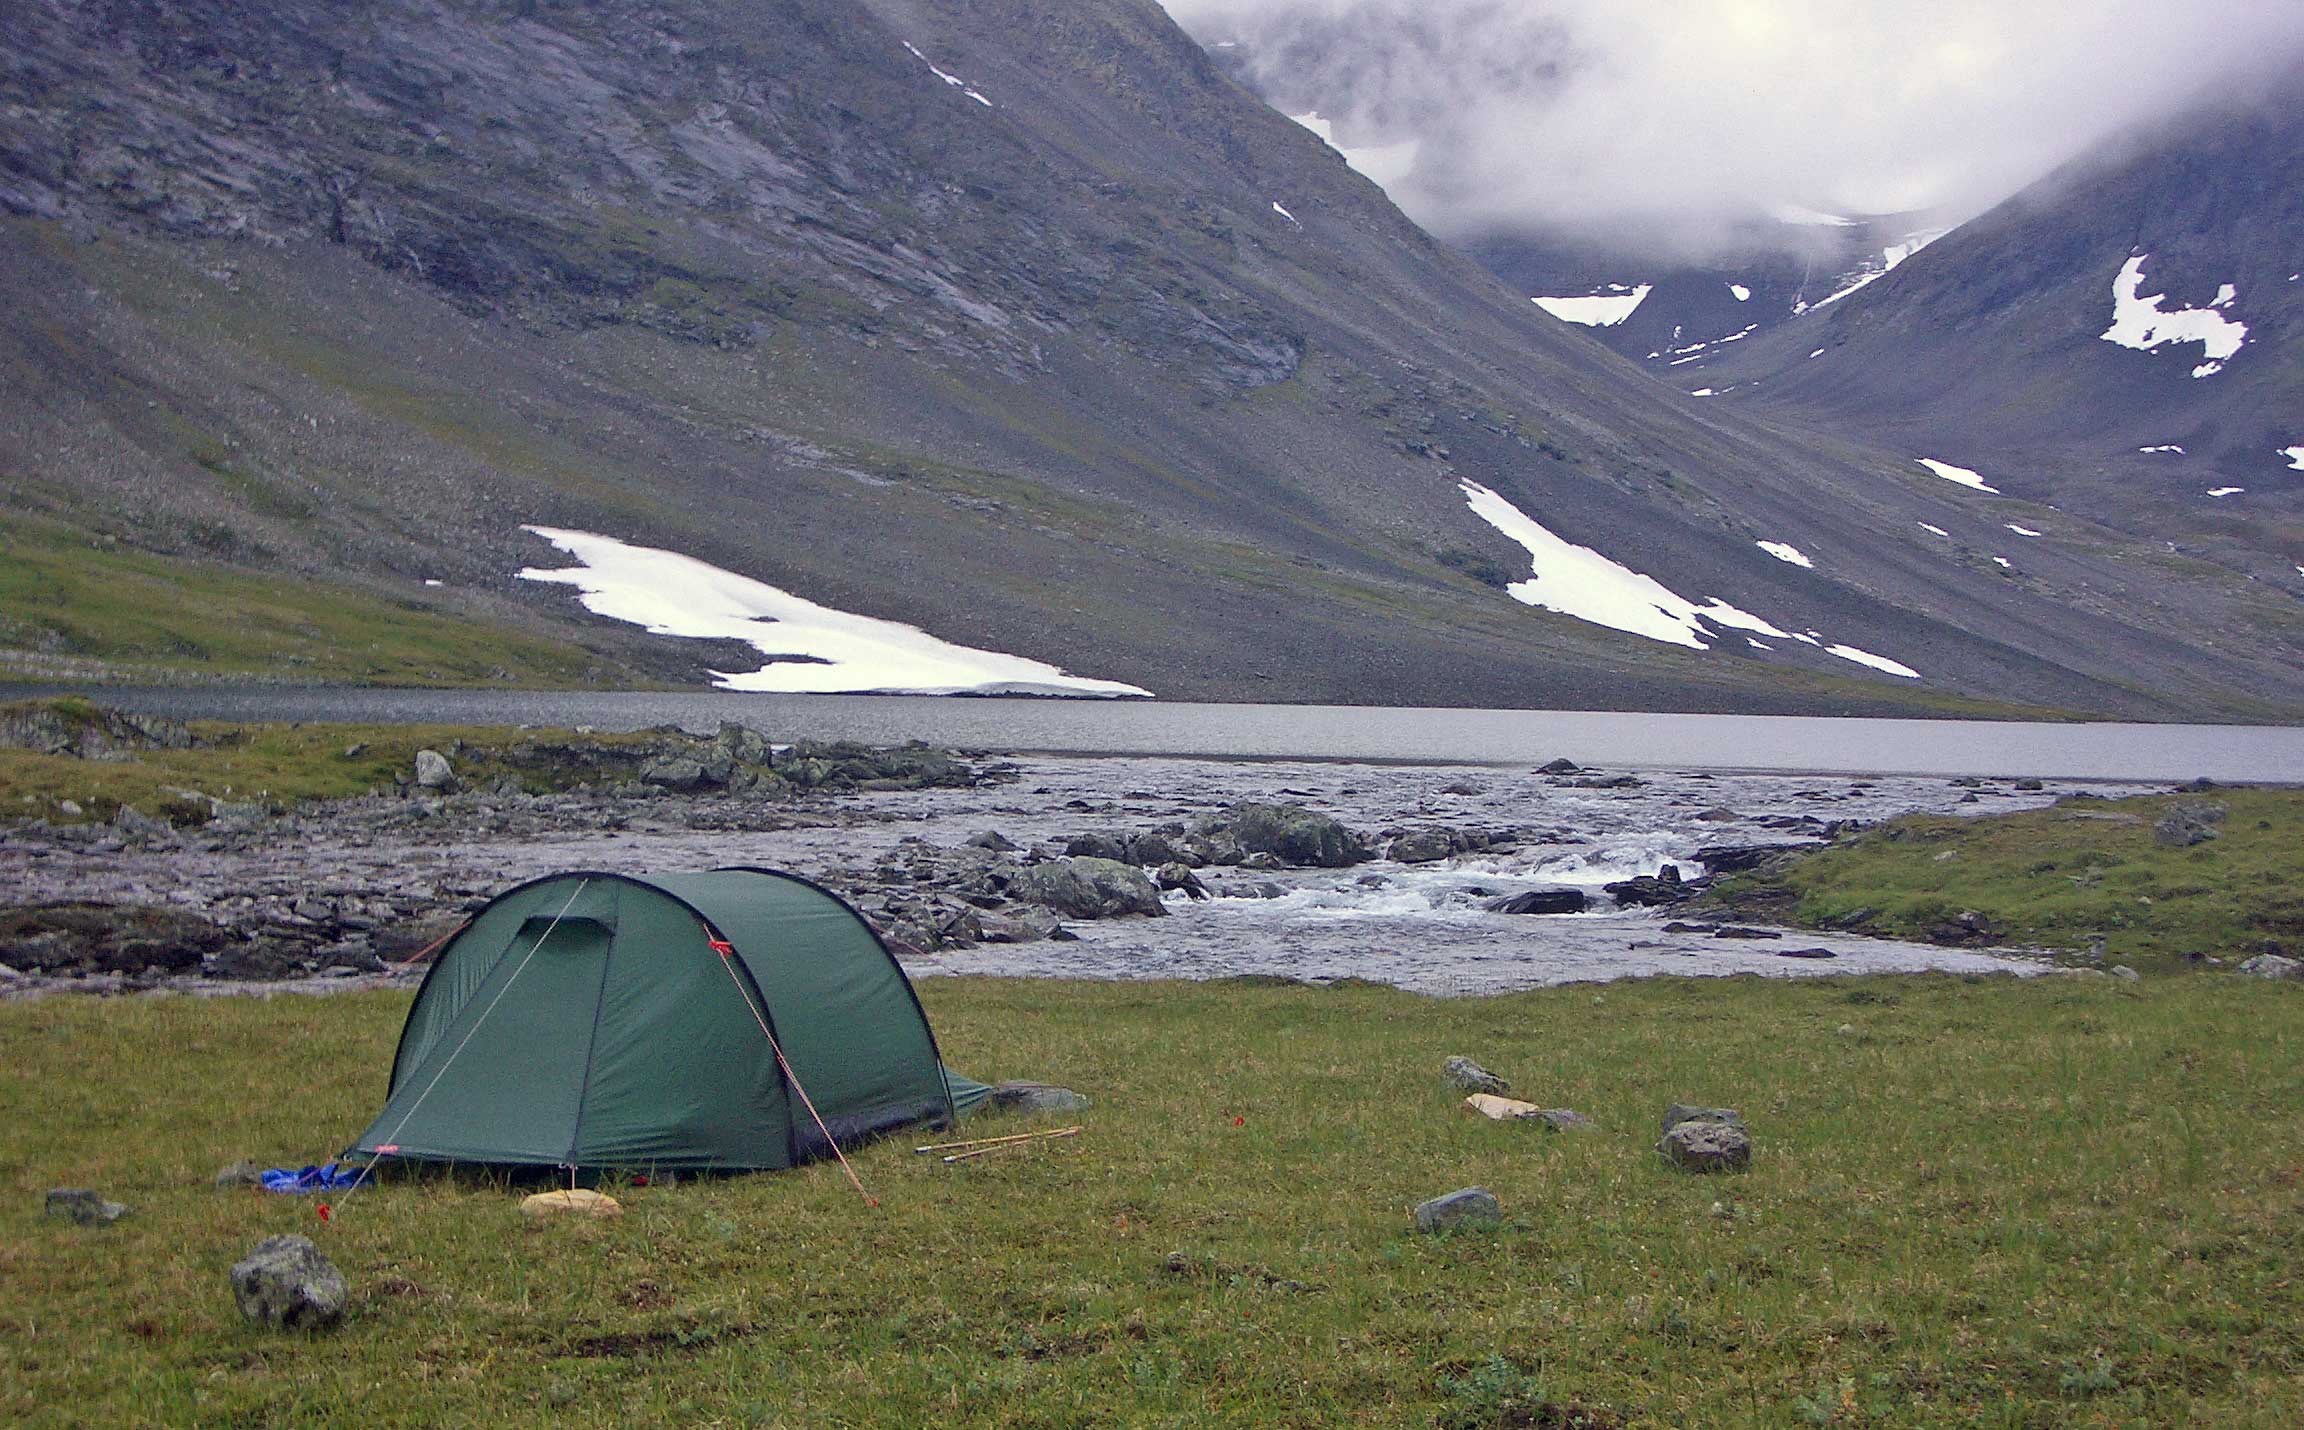 Precis nedanför utloppet från Lulep Njåtjosjaure finns en bra tältplats